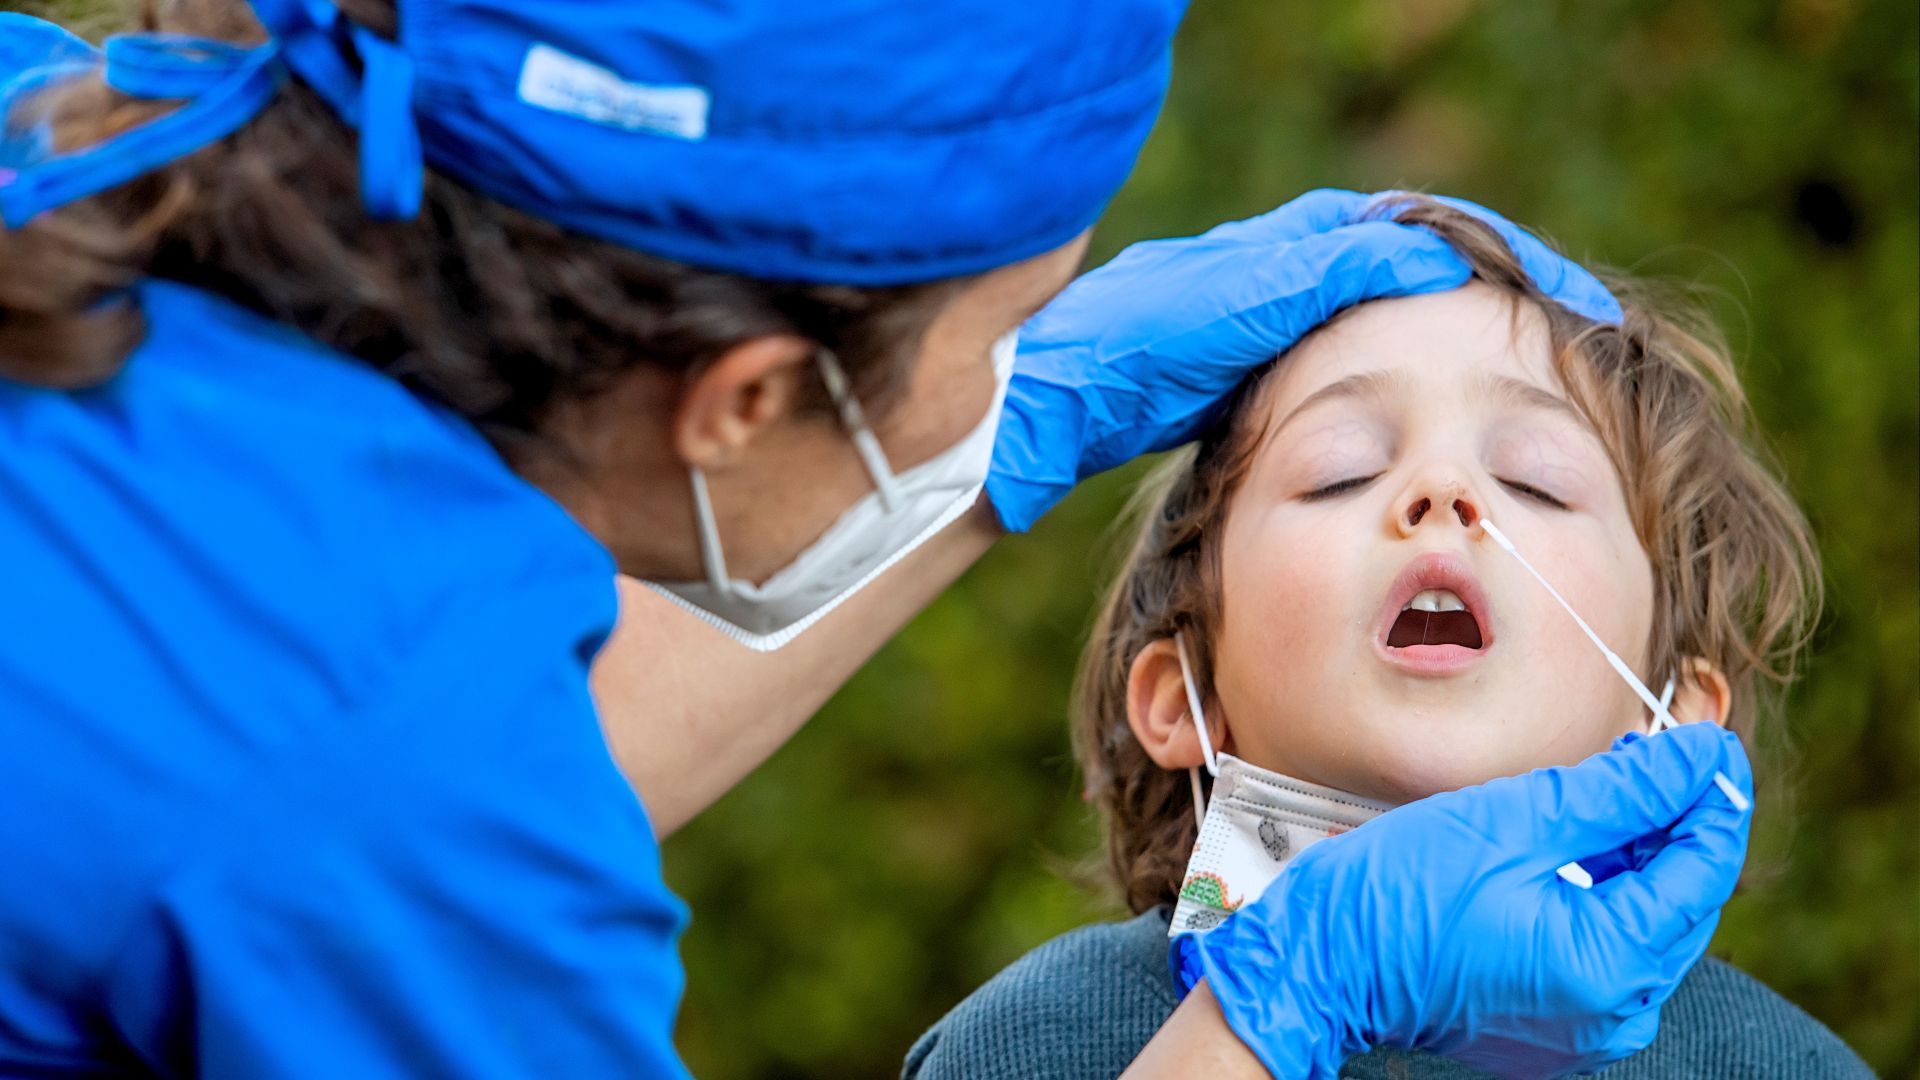 Лекари в САЩ предупредиха за нов COVID симптом при децата: "Лаеща" кашлица и хриптене